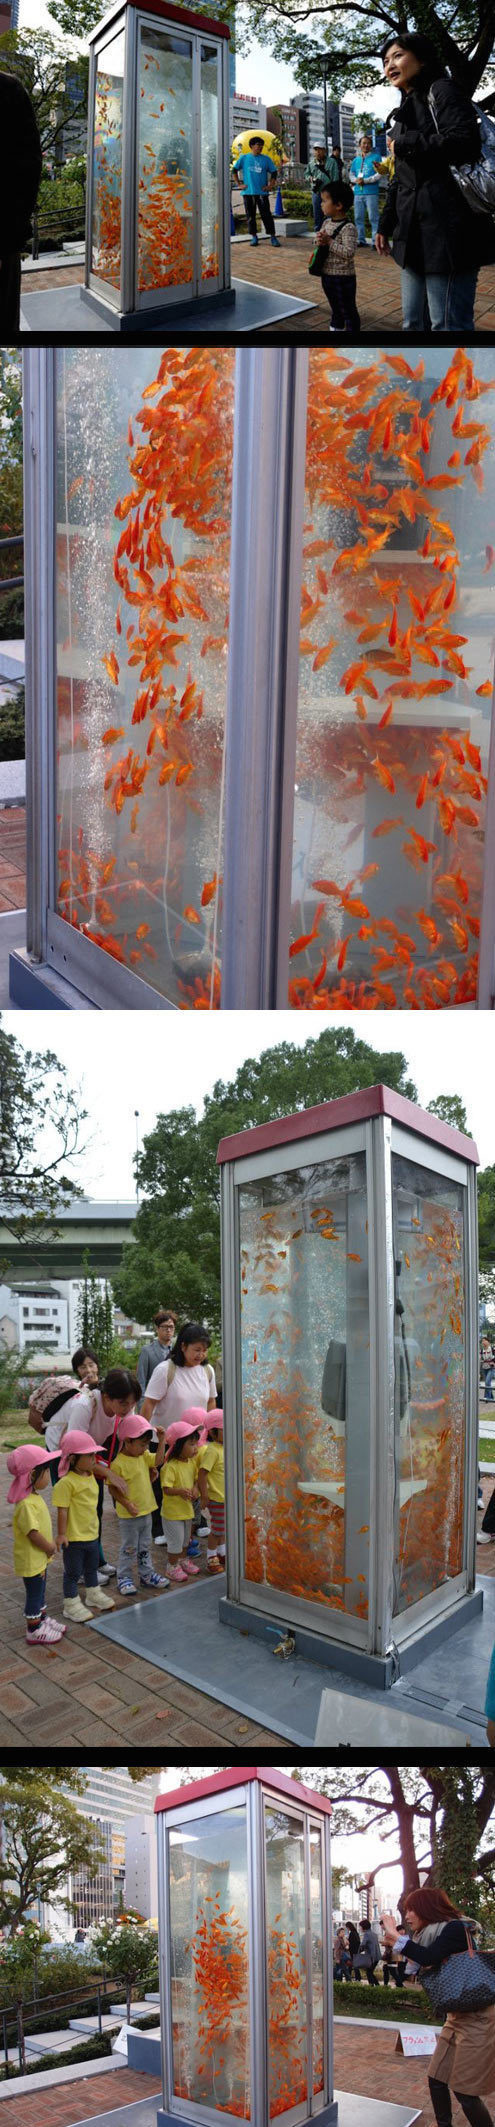 Goldfish aquarium phone booths.